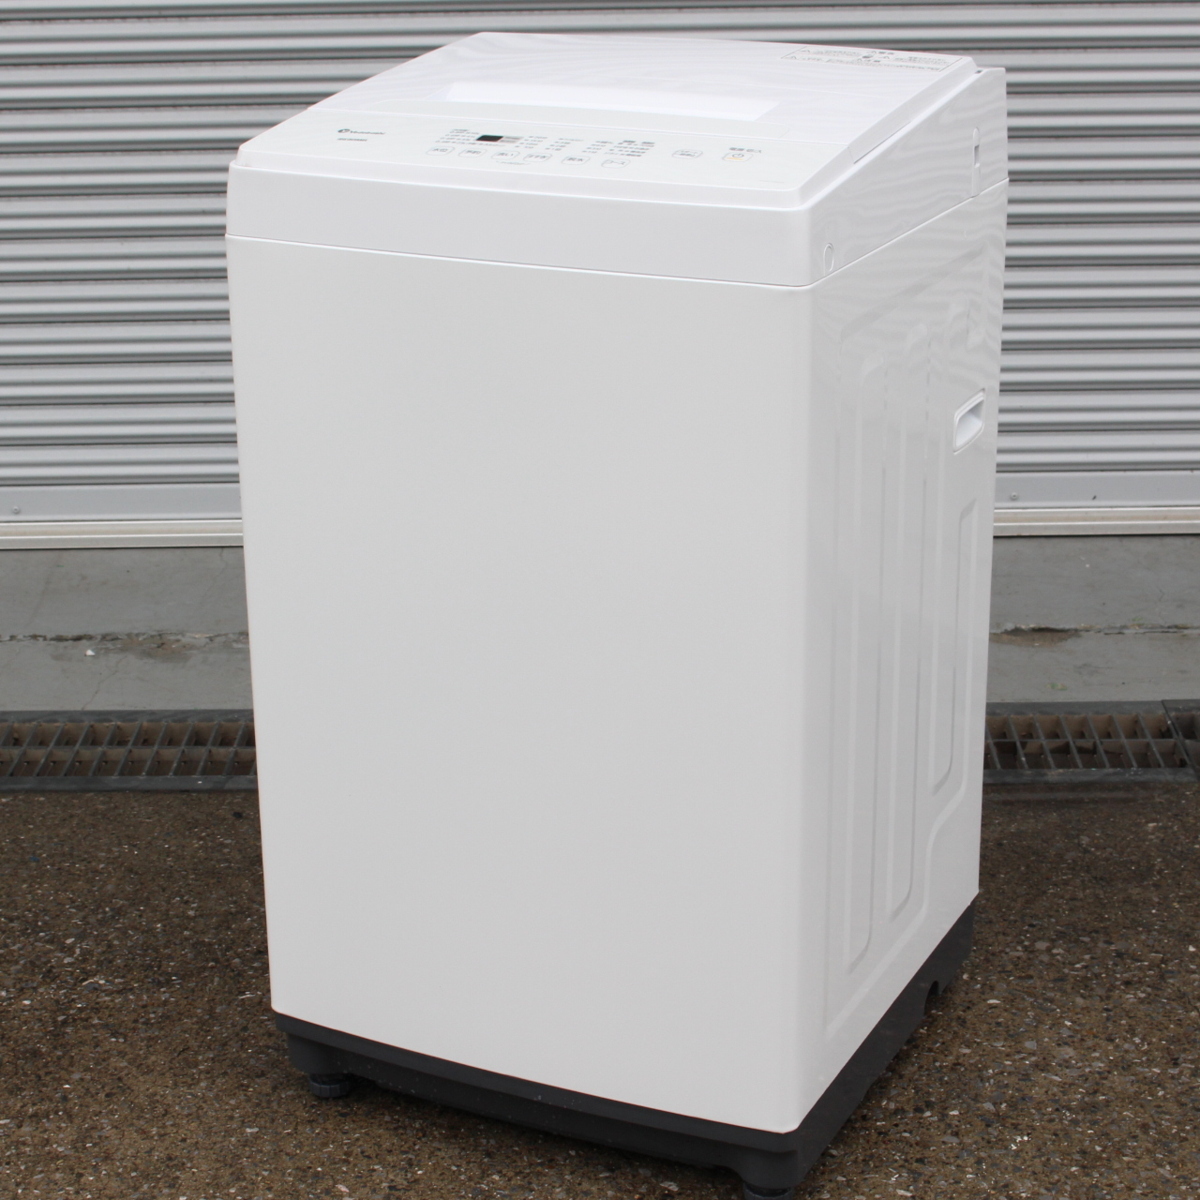 アイリスオーヤマ KAW-YD60A 全自動洗濯機 2020年製 6kg 6.0kg